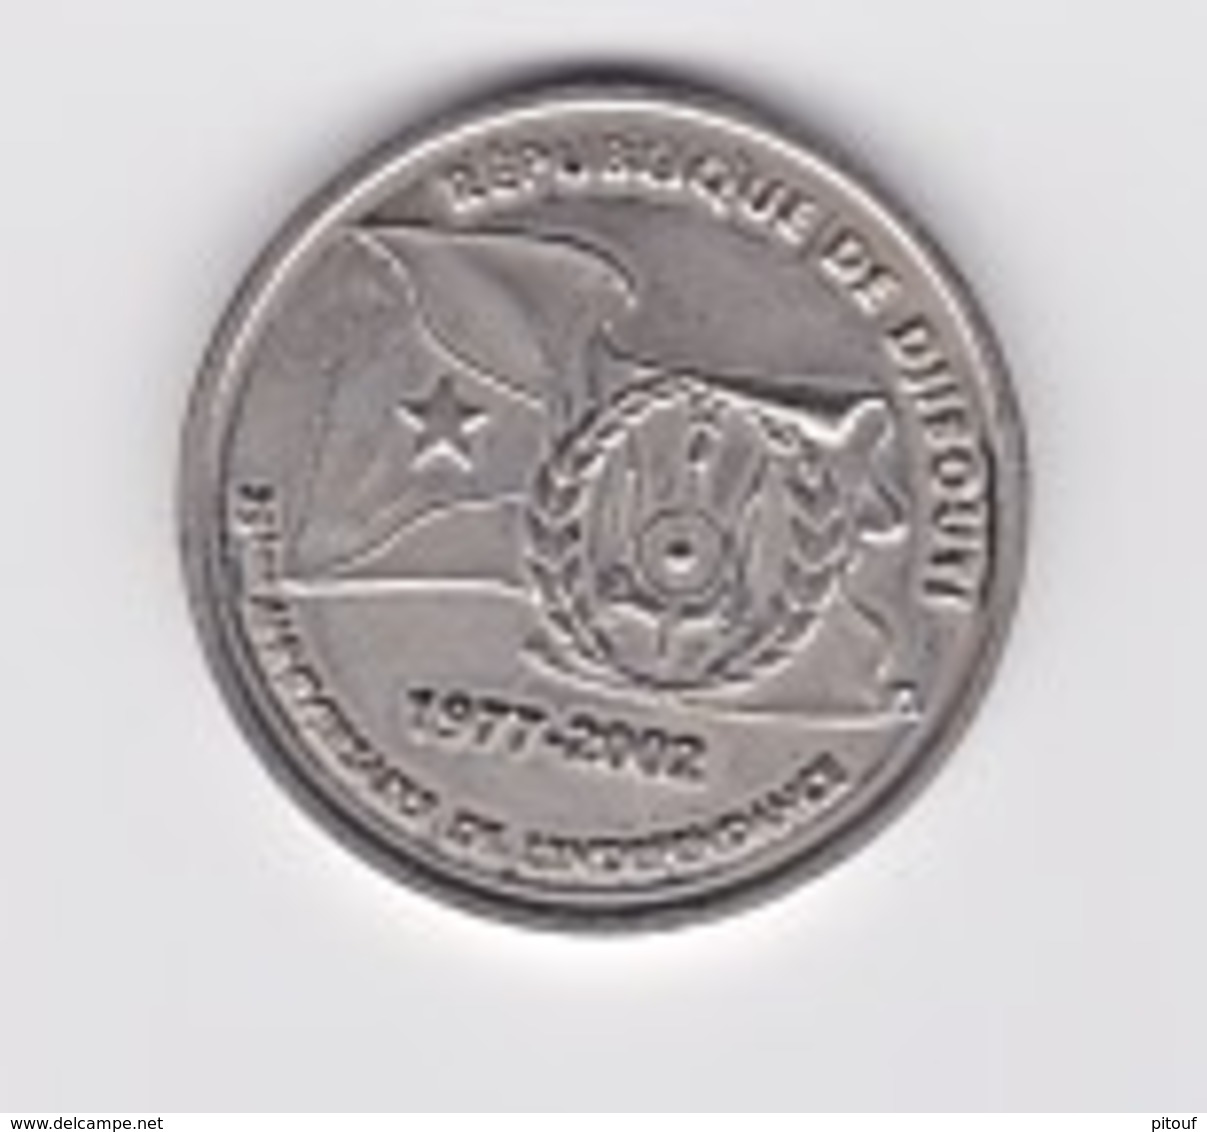 TRES RARE .Edition numismatique limitée de la Banque Centrale pour le 25ème anniversaire de l'indépendance.3 monnaies